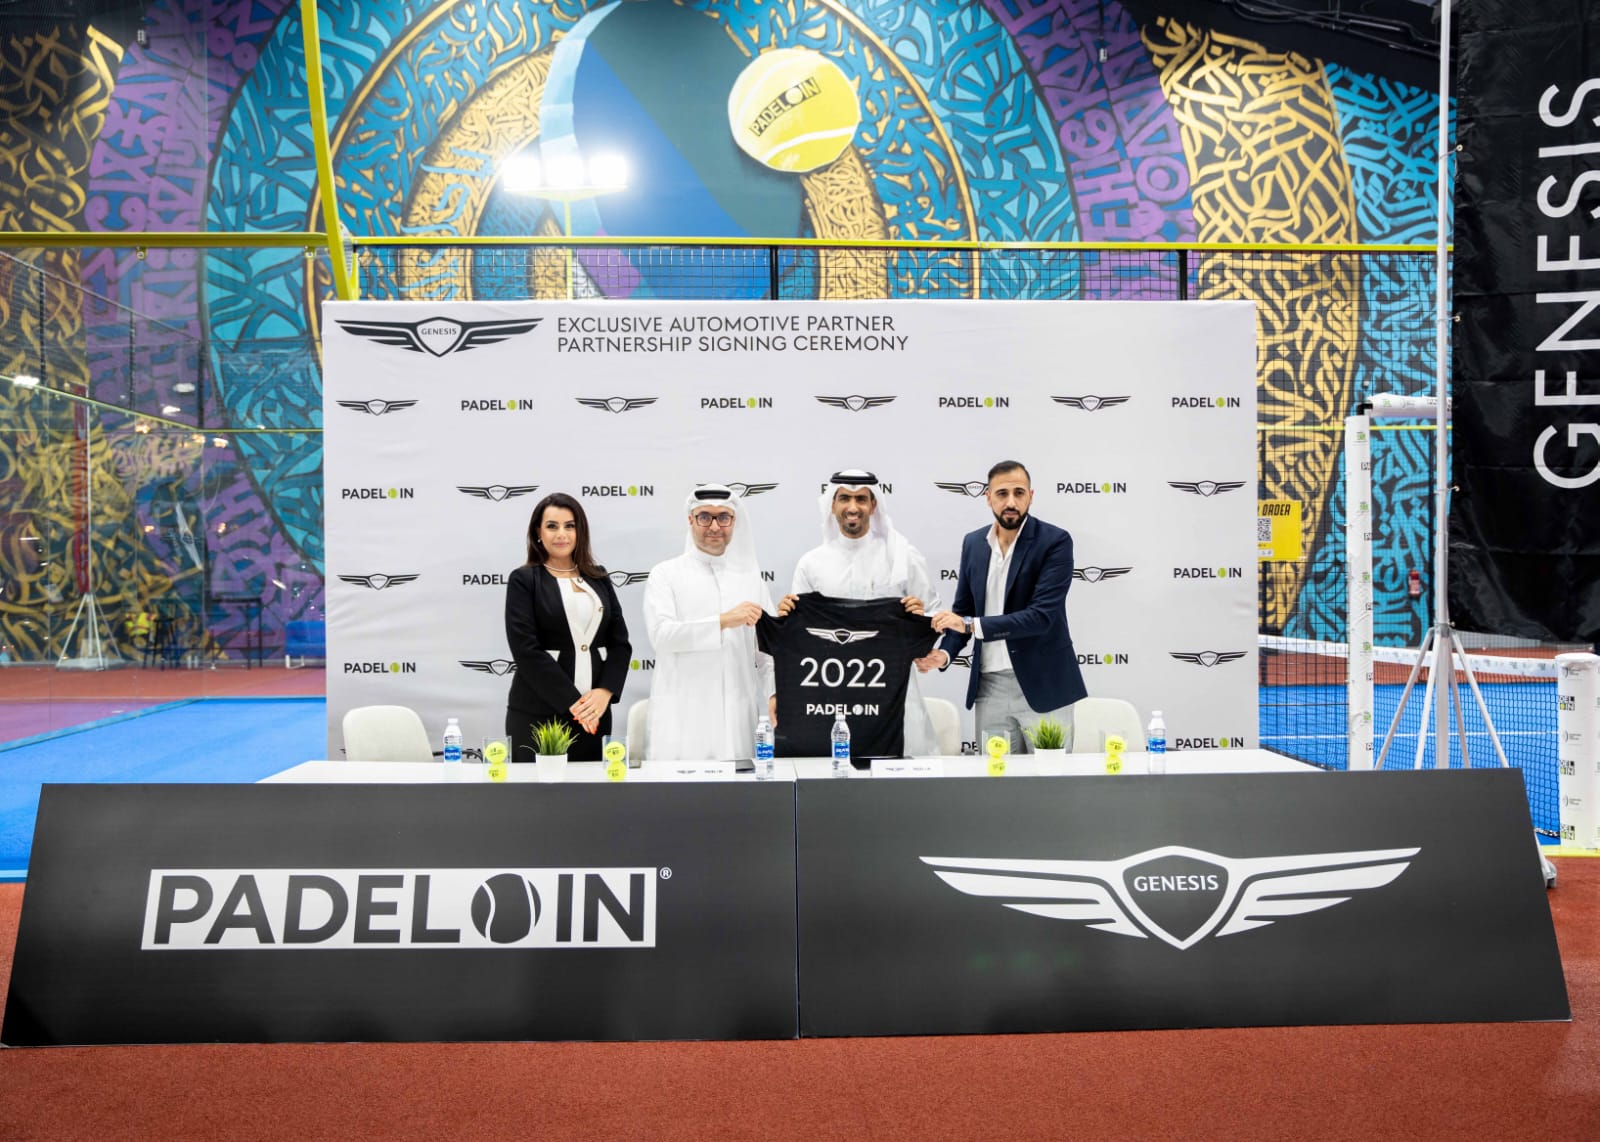 جينيسيس الشرق الأوسط وأفريقيا تطلق شراكة مع سكايلاين للسيارات لرعاية PADEL IN في قطر لمدة عام واحد